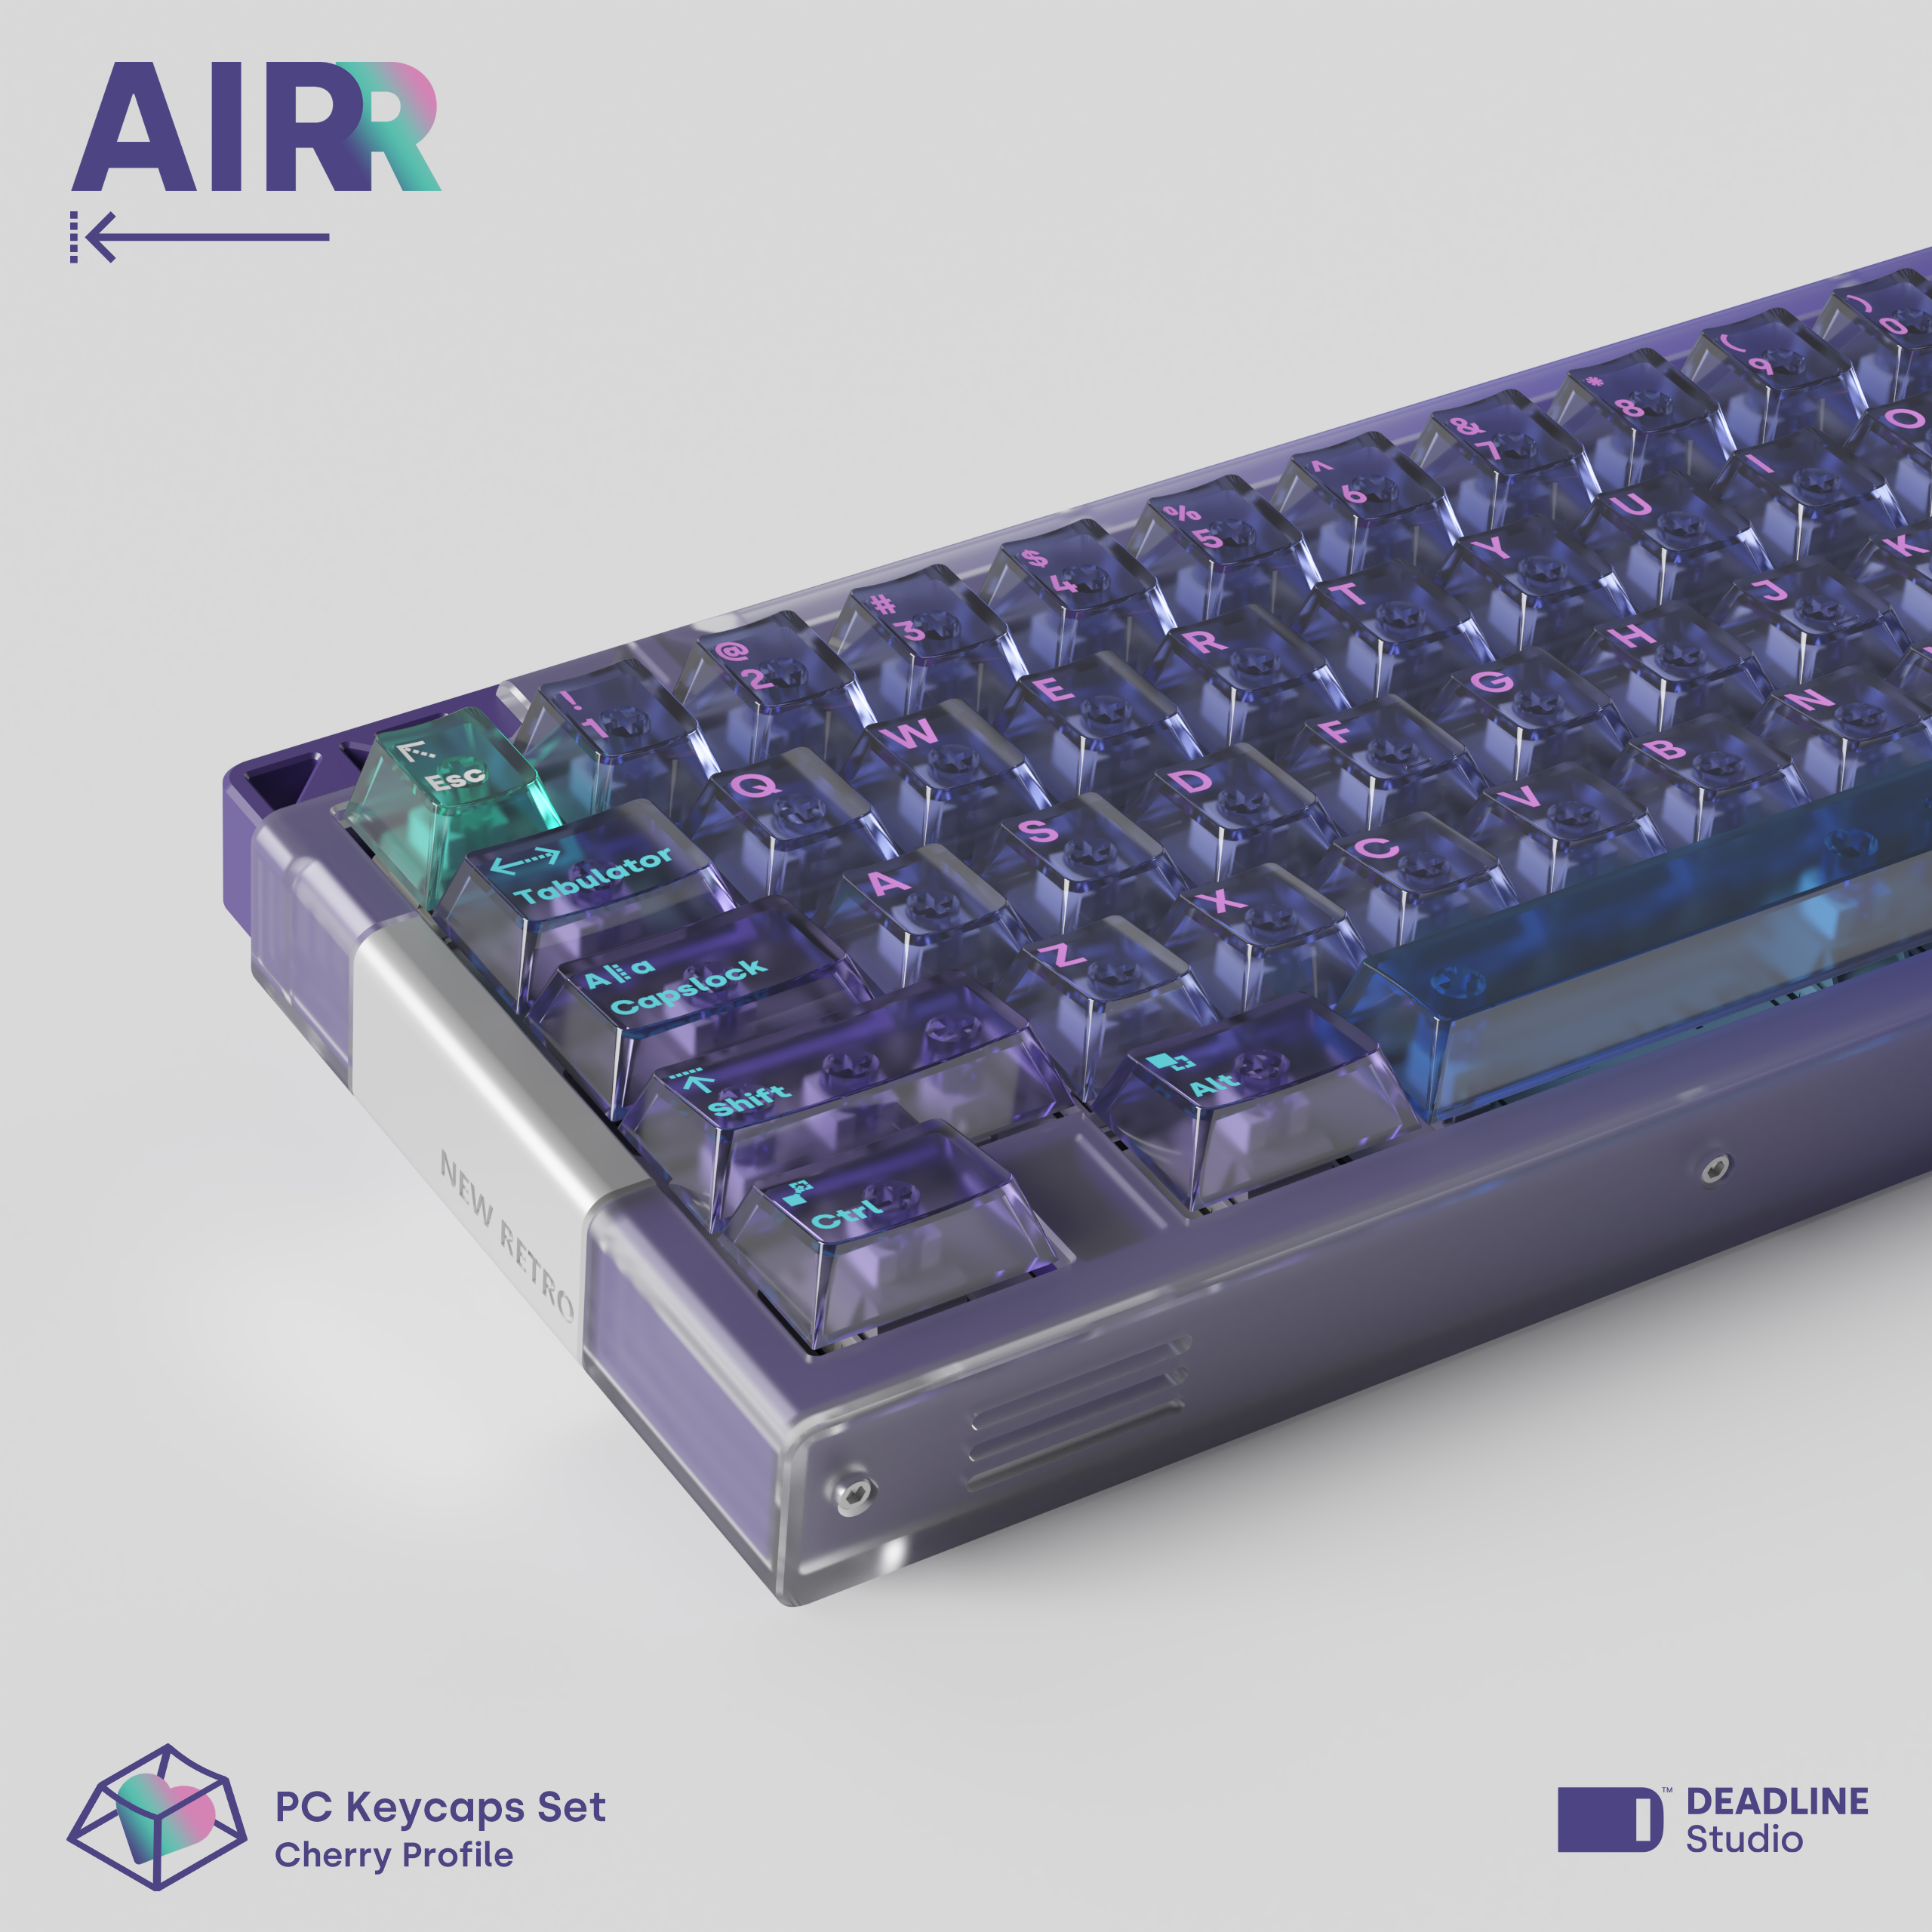 Deadline AirR PC Keycaps